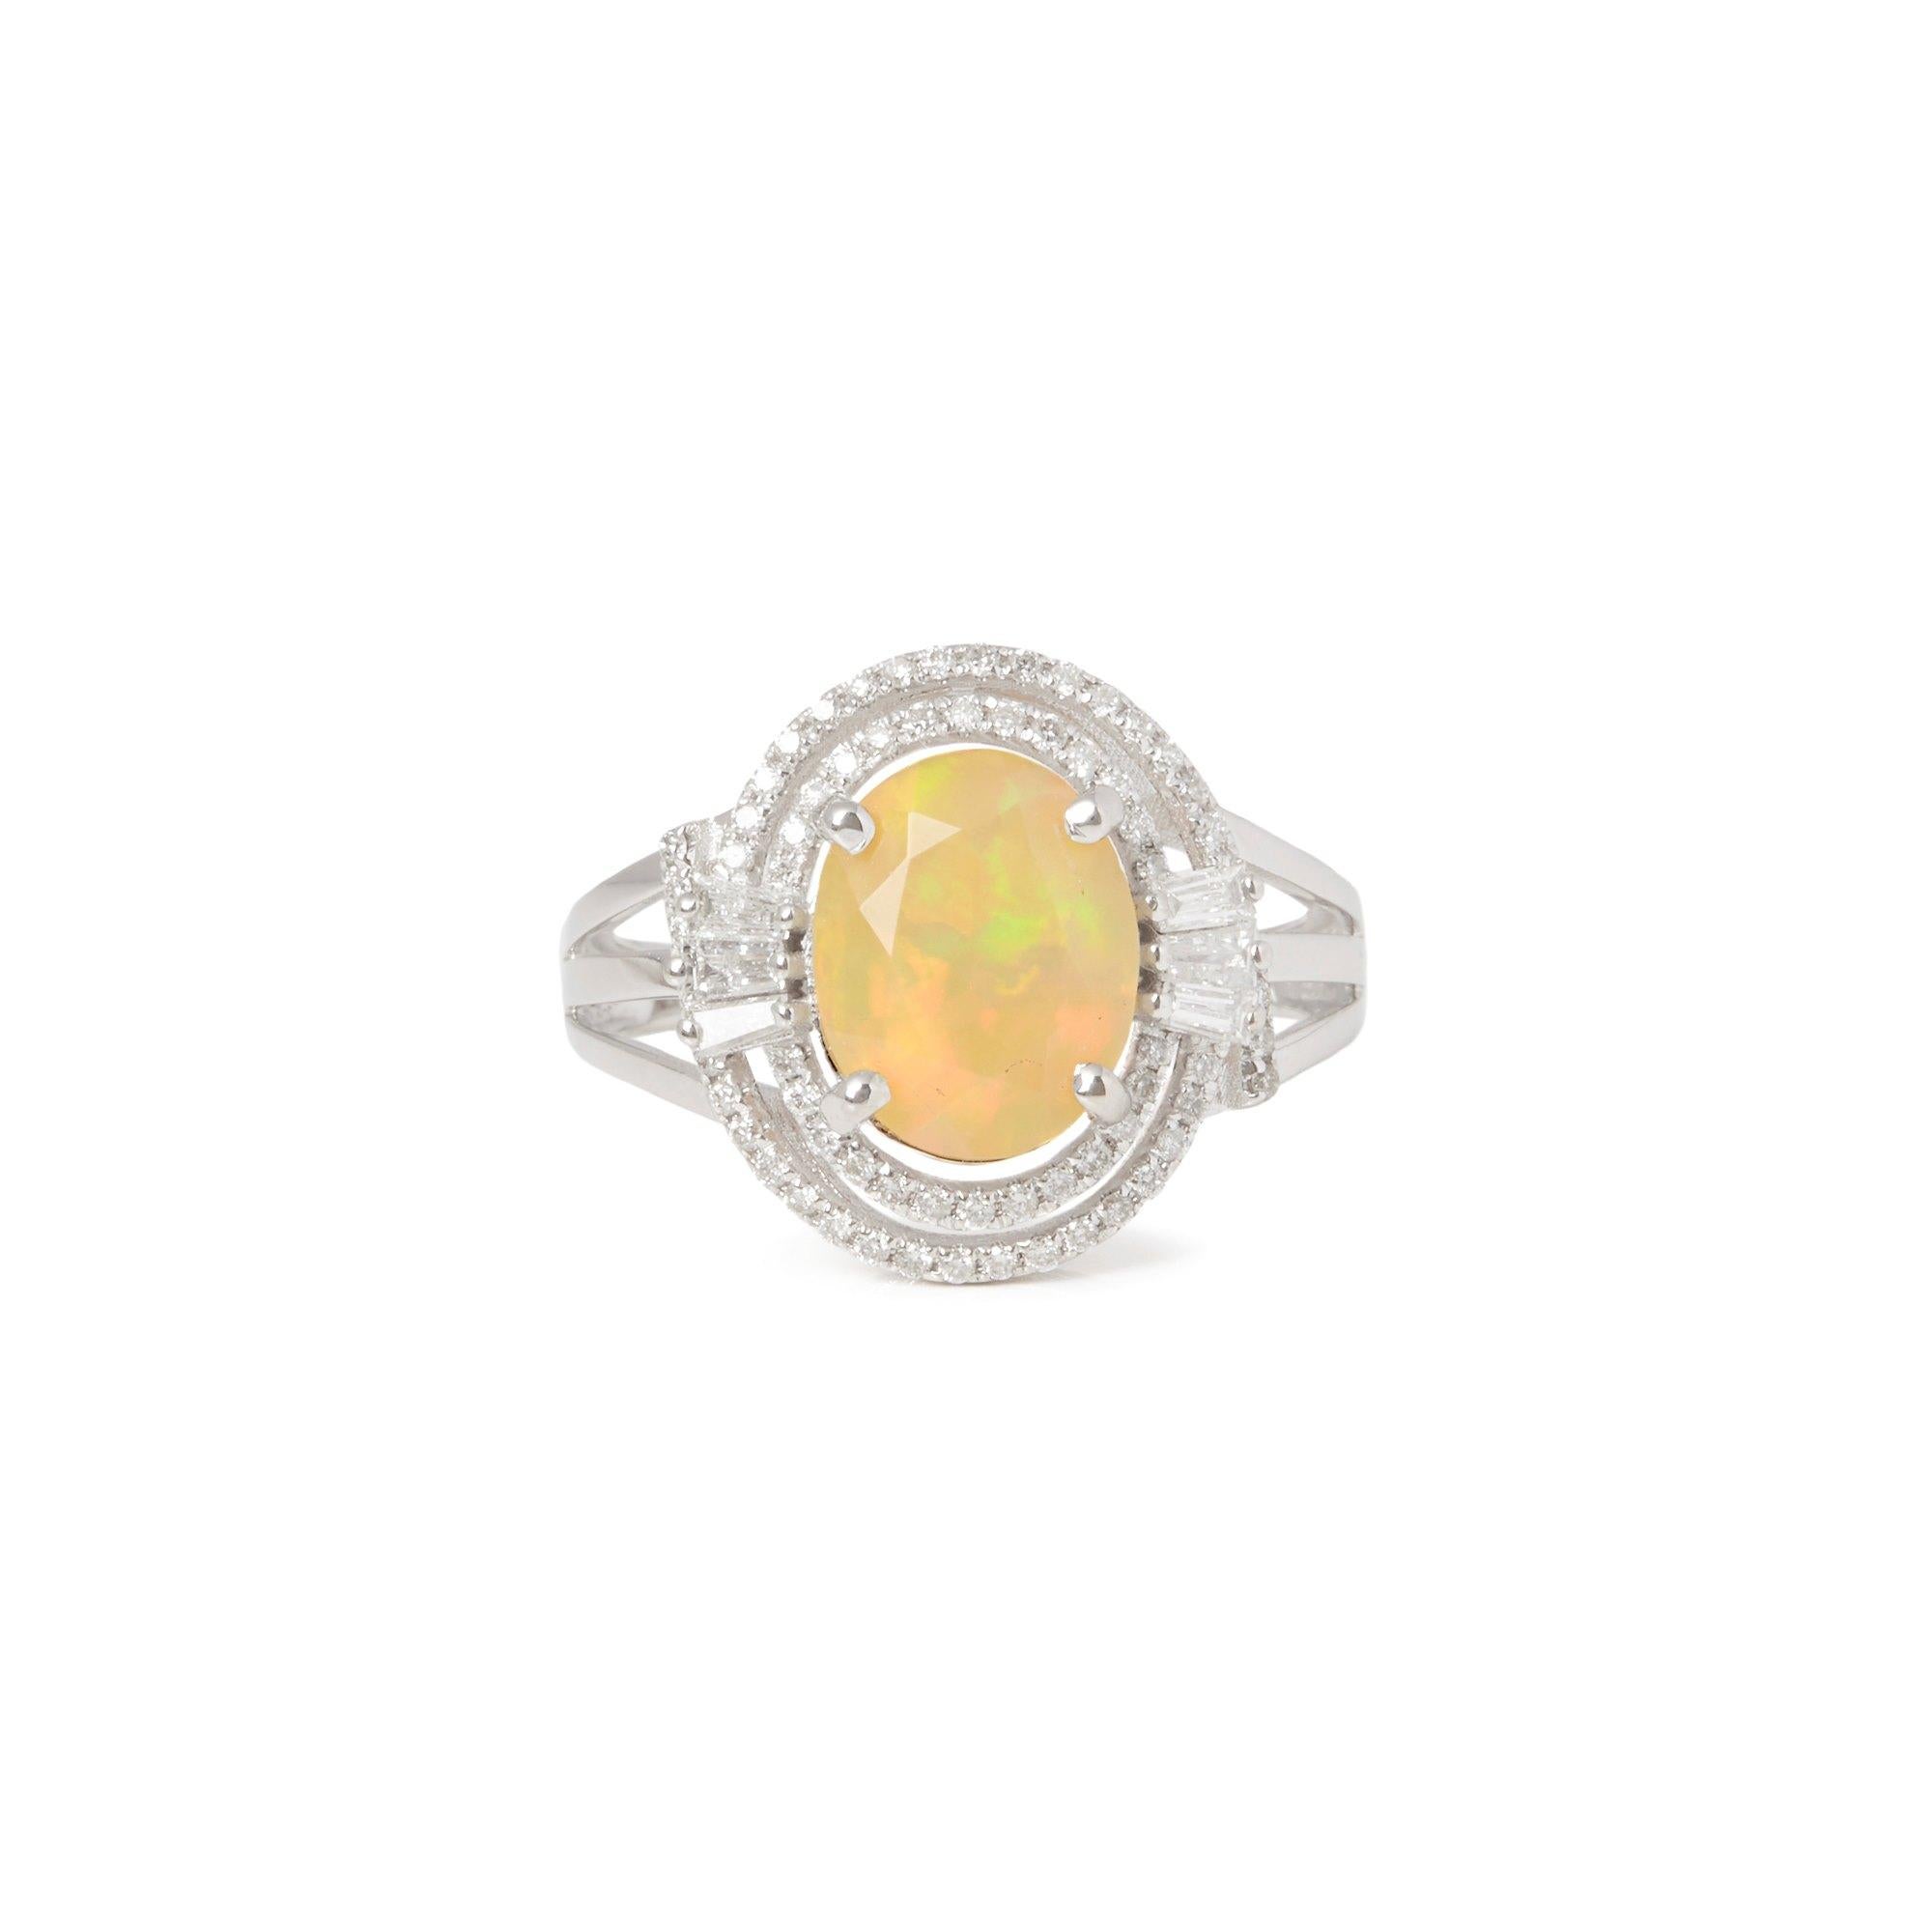 Dieser von David Jerome entworfene Ring stammt aus seiner privaten Collection und enthält einen Opal im Ovalschliff mit einem Gesamtgewicht von 1,89 Karat aus Äthiopien. Mit runden Diamanten im Brillantschliff von insgesamt 0,49 ct. in einer Fassung